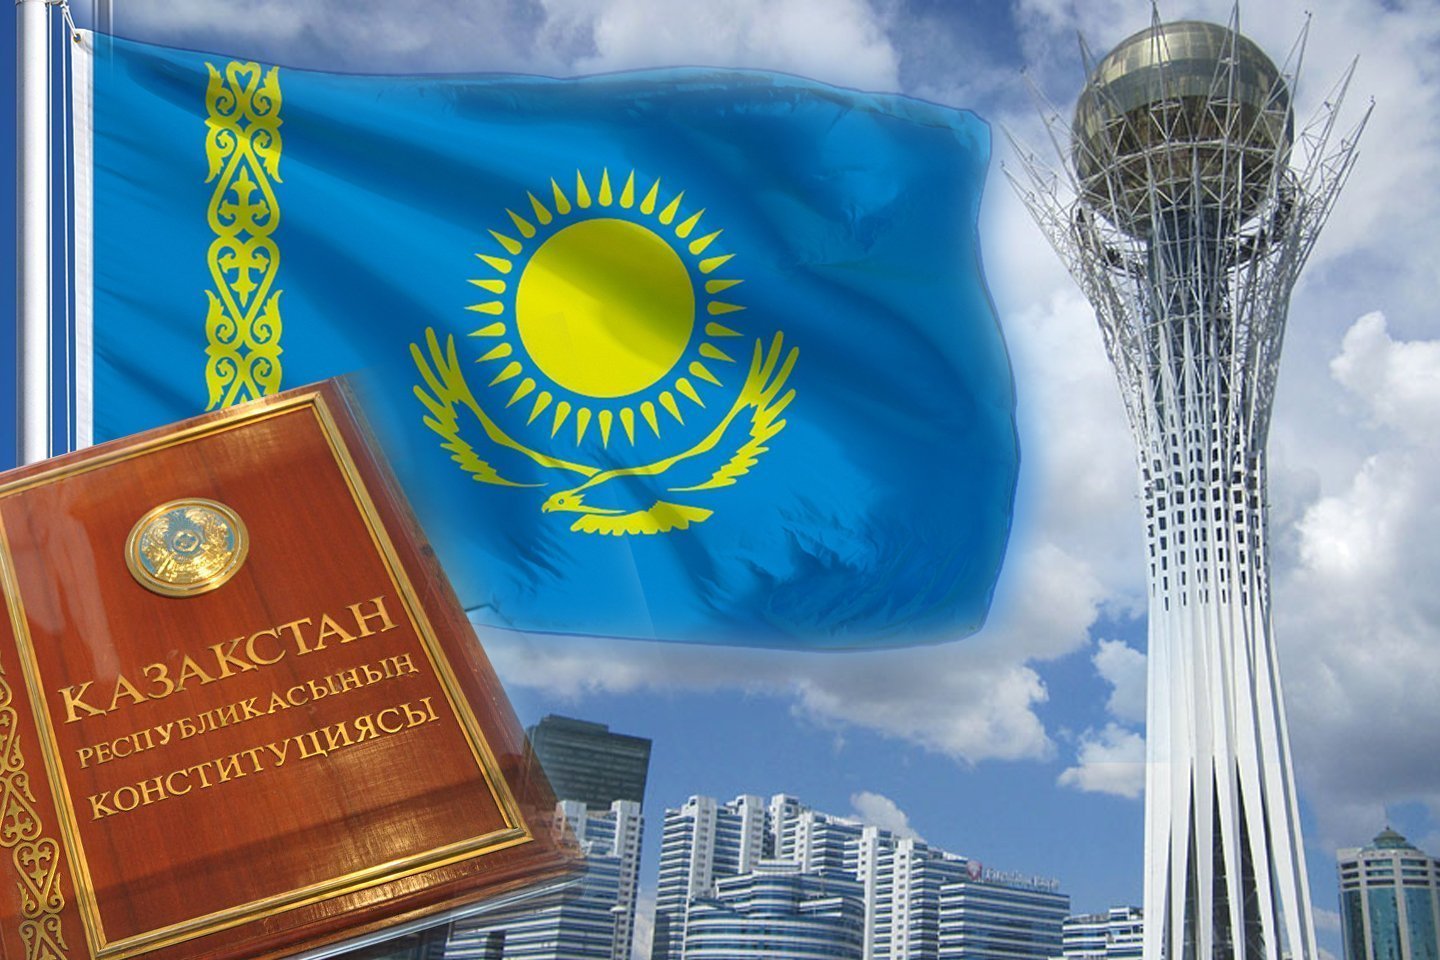 Новости Казахстана / Общество в Казахстане / Принятые народом поправки в Конституцию означают создание Второй республики - Токаев